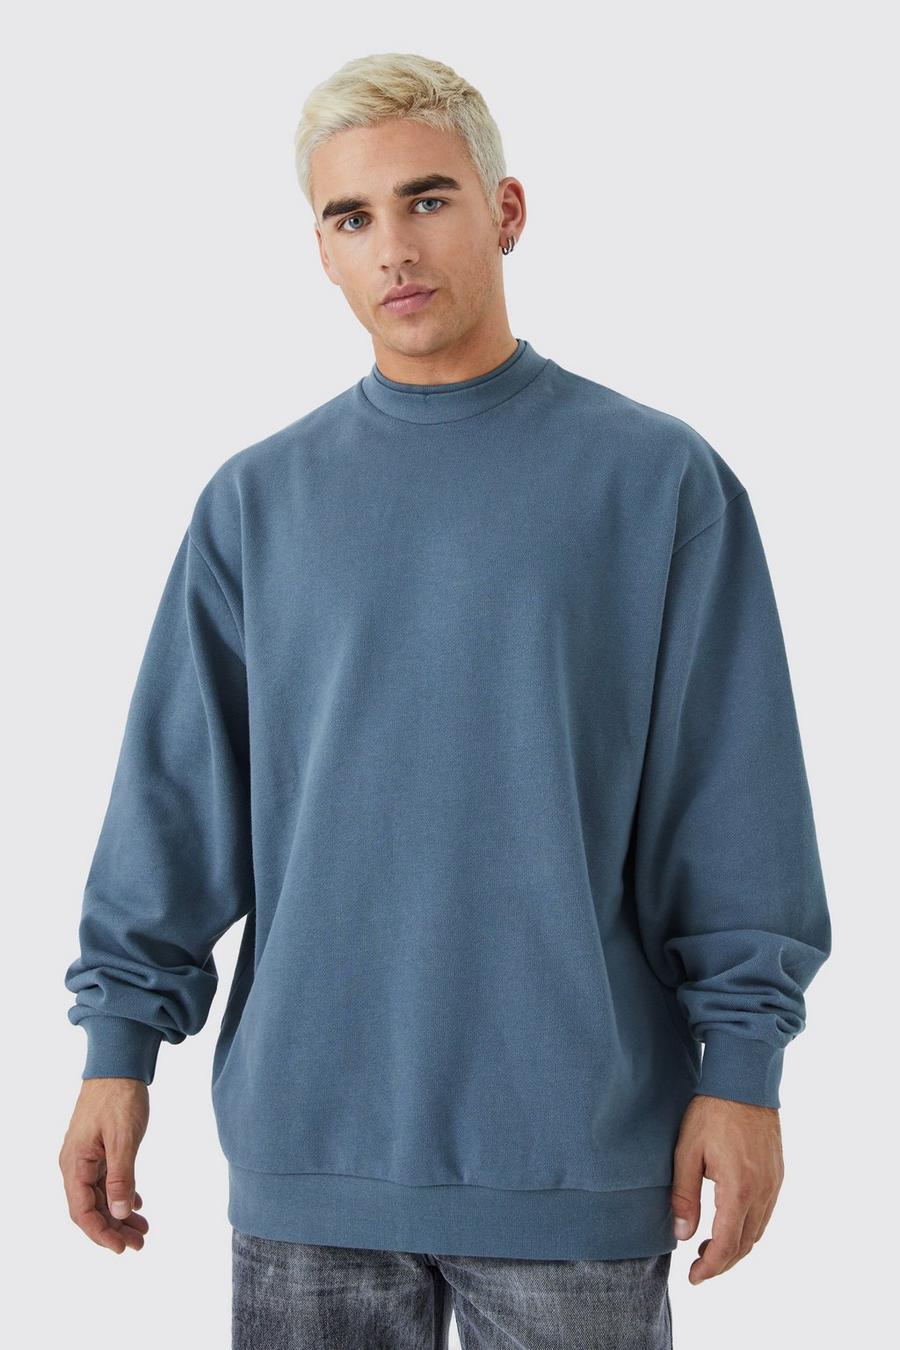 Slate blue Oversized Heavy Extend Double Neck Sweatshirt